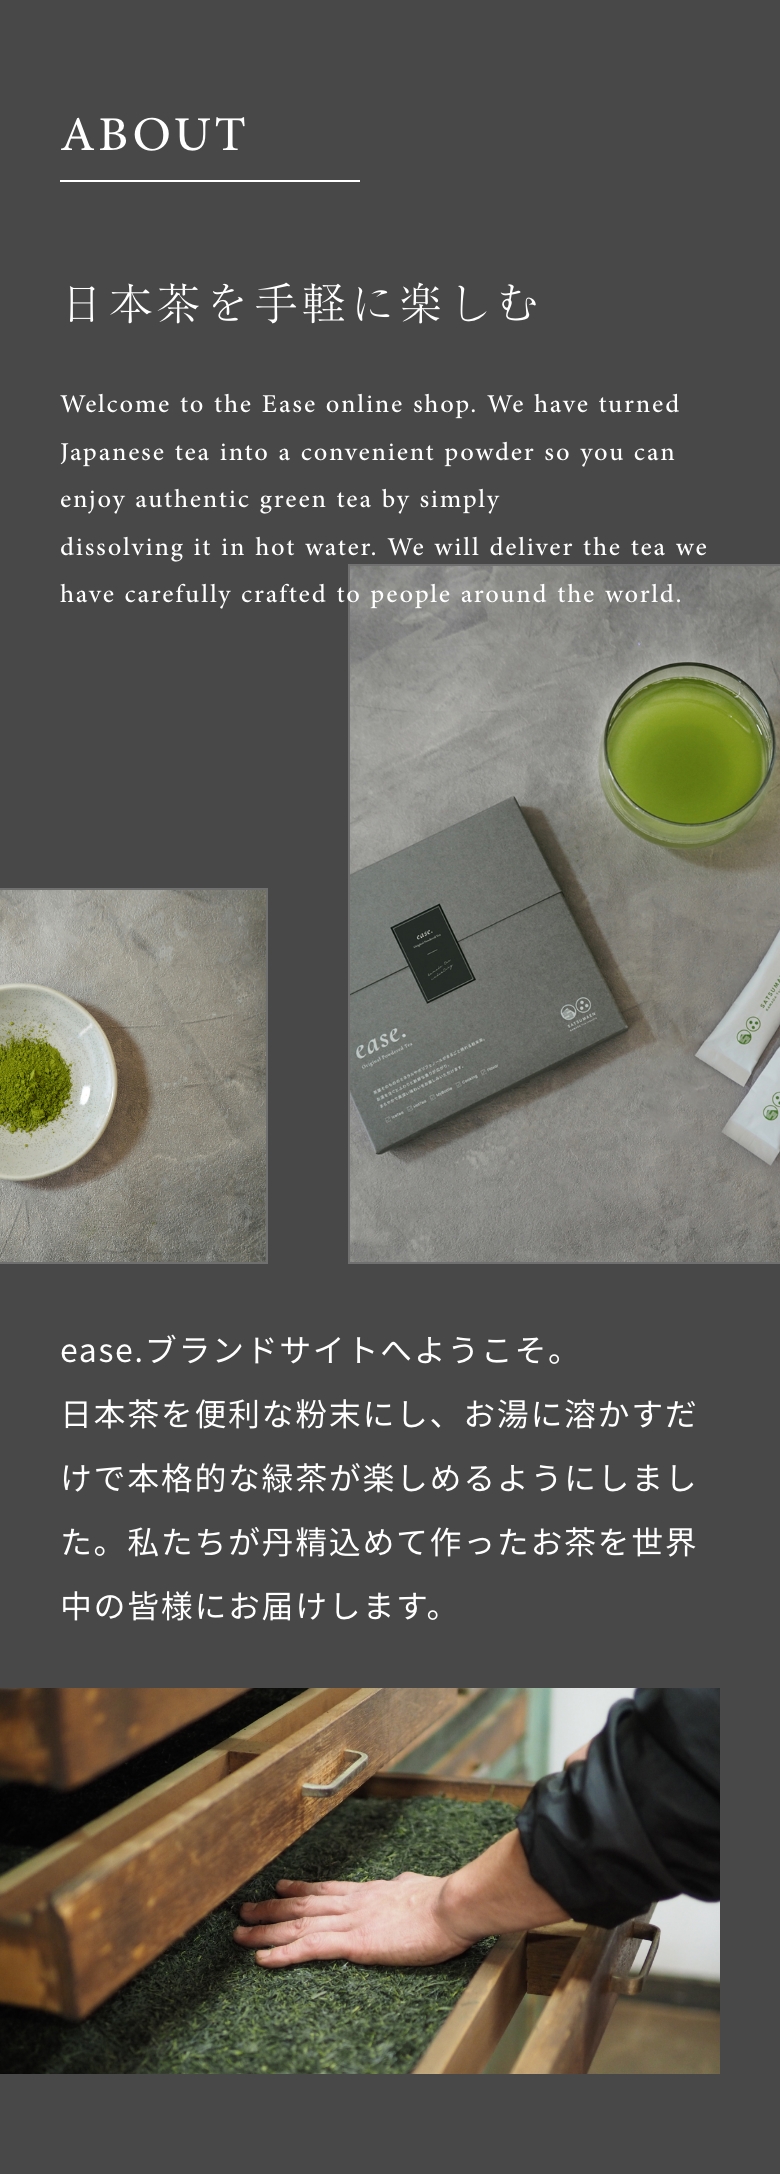 日本茶を手軽に楽しむ ease.ブランドサイトへようこそ。日本茶を便利な粉末にし、お湯に溶かすだけで本格的な緑茶が楽しめるようにしました。私たちが丹精込めて作ったお茶を世界中の皆様にお届けします。